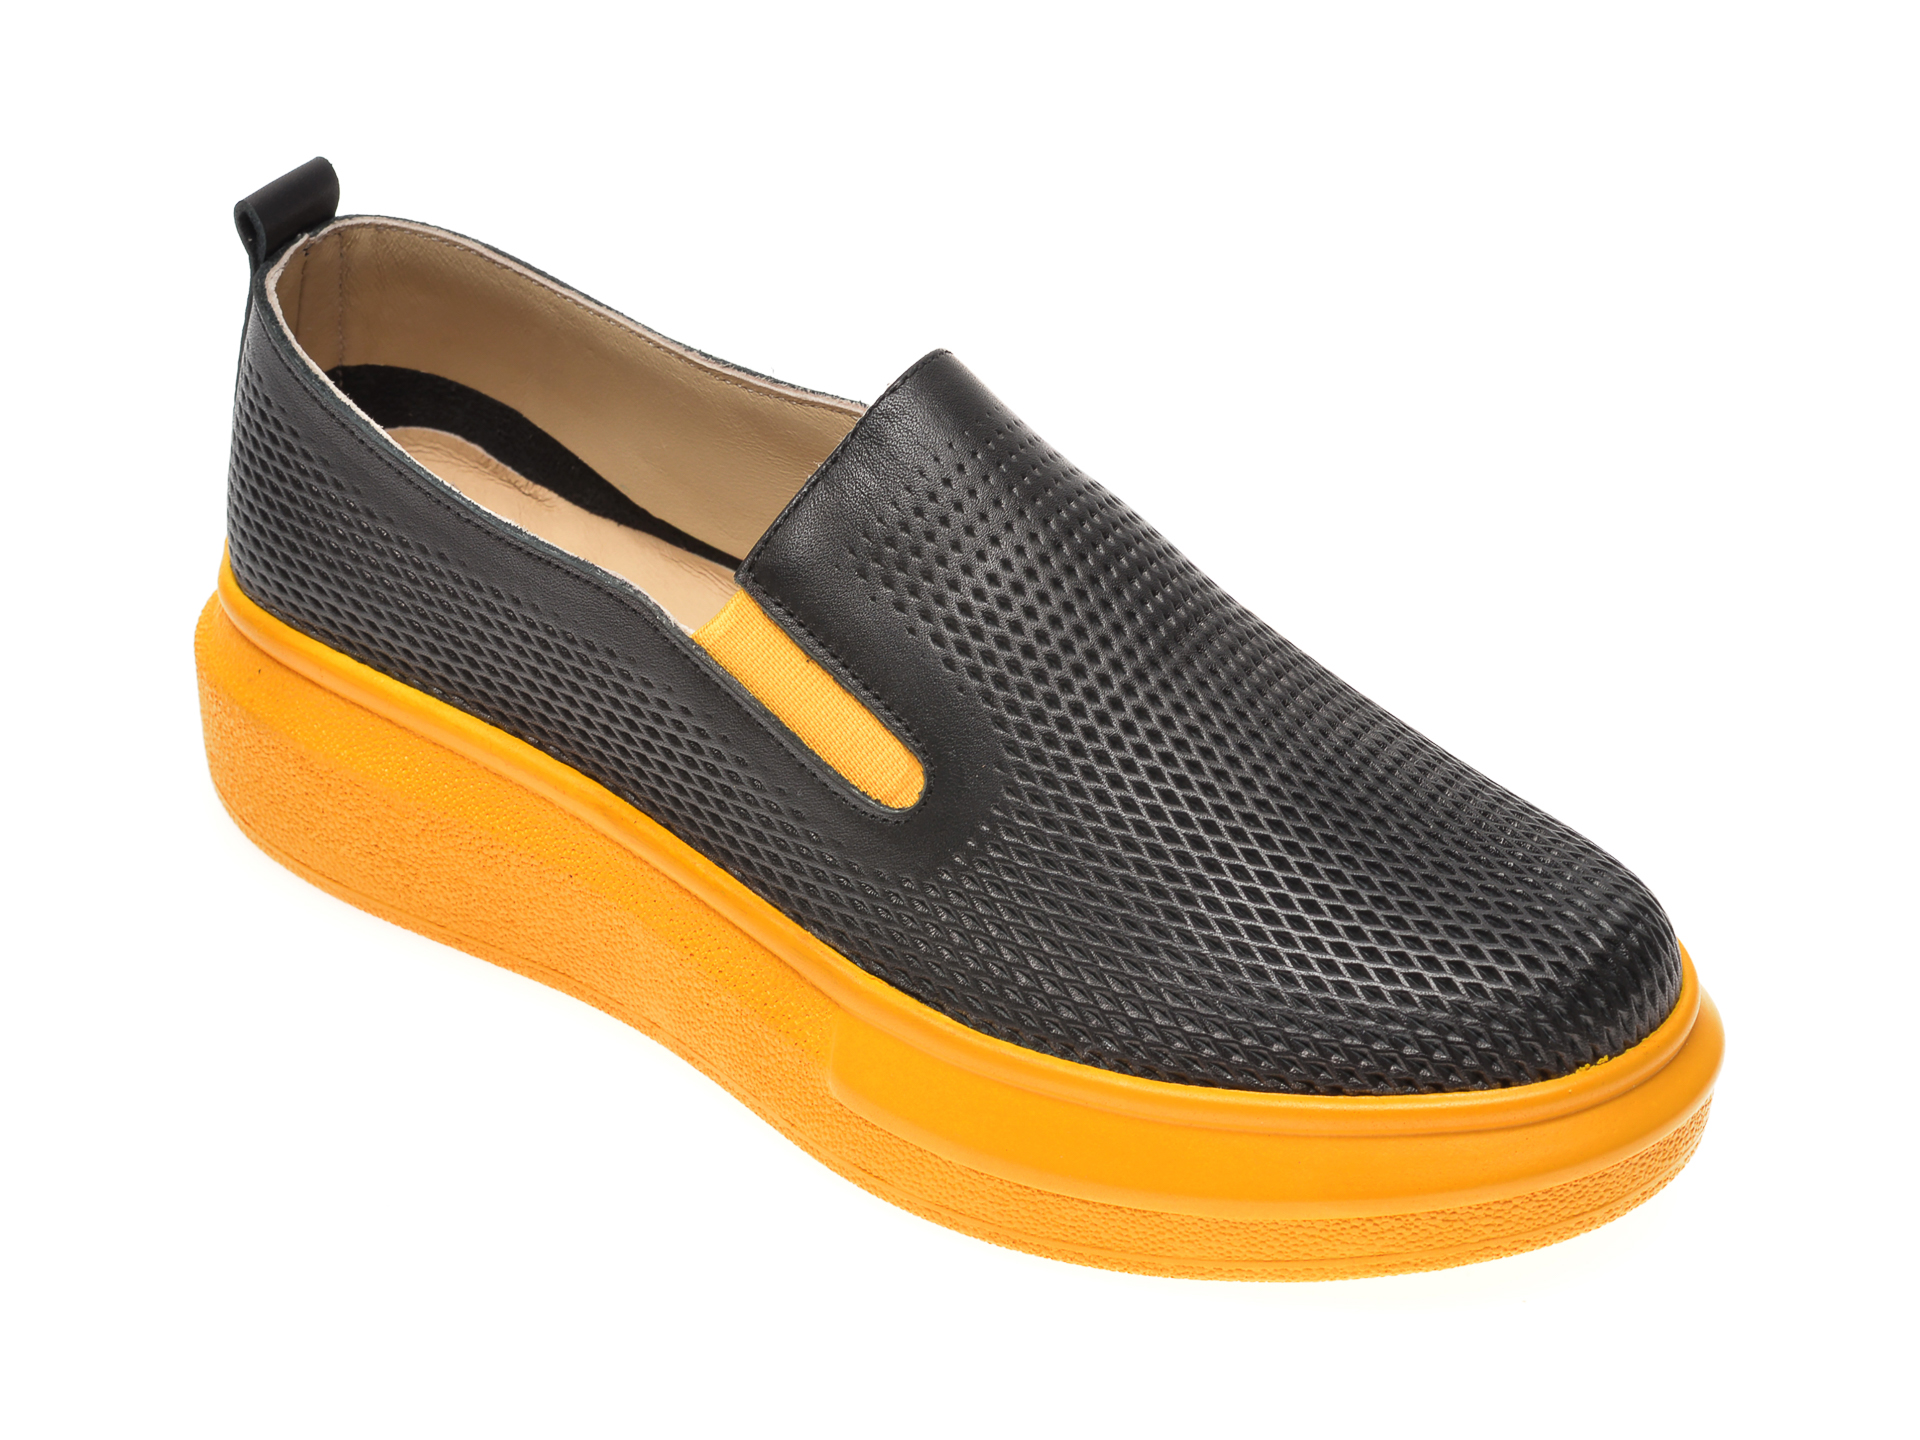 Pantofi PASS COLLECTION negri, K92102, din piele naturala PASS COLLECTION imagine reduceri